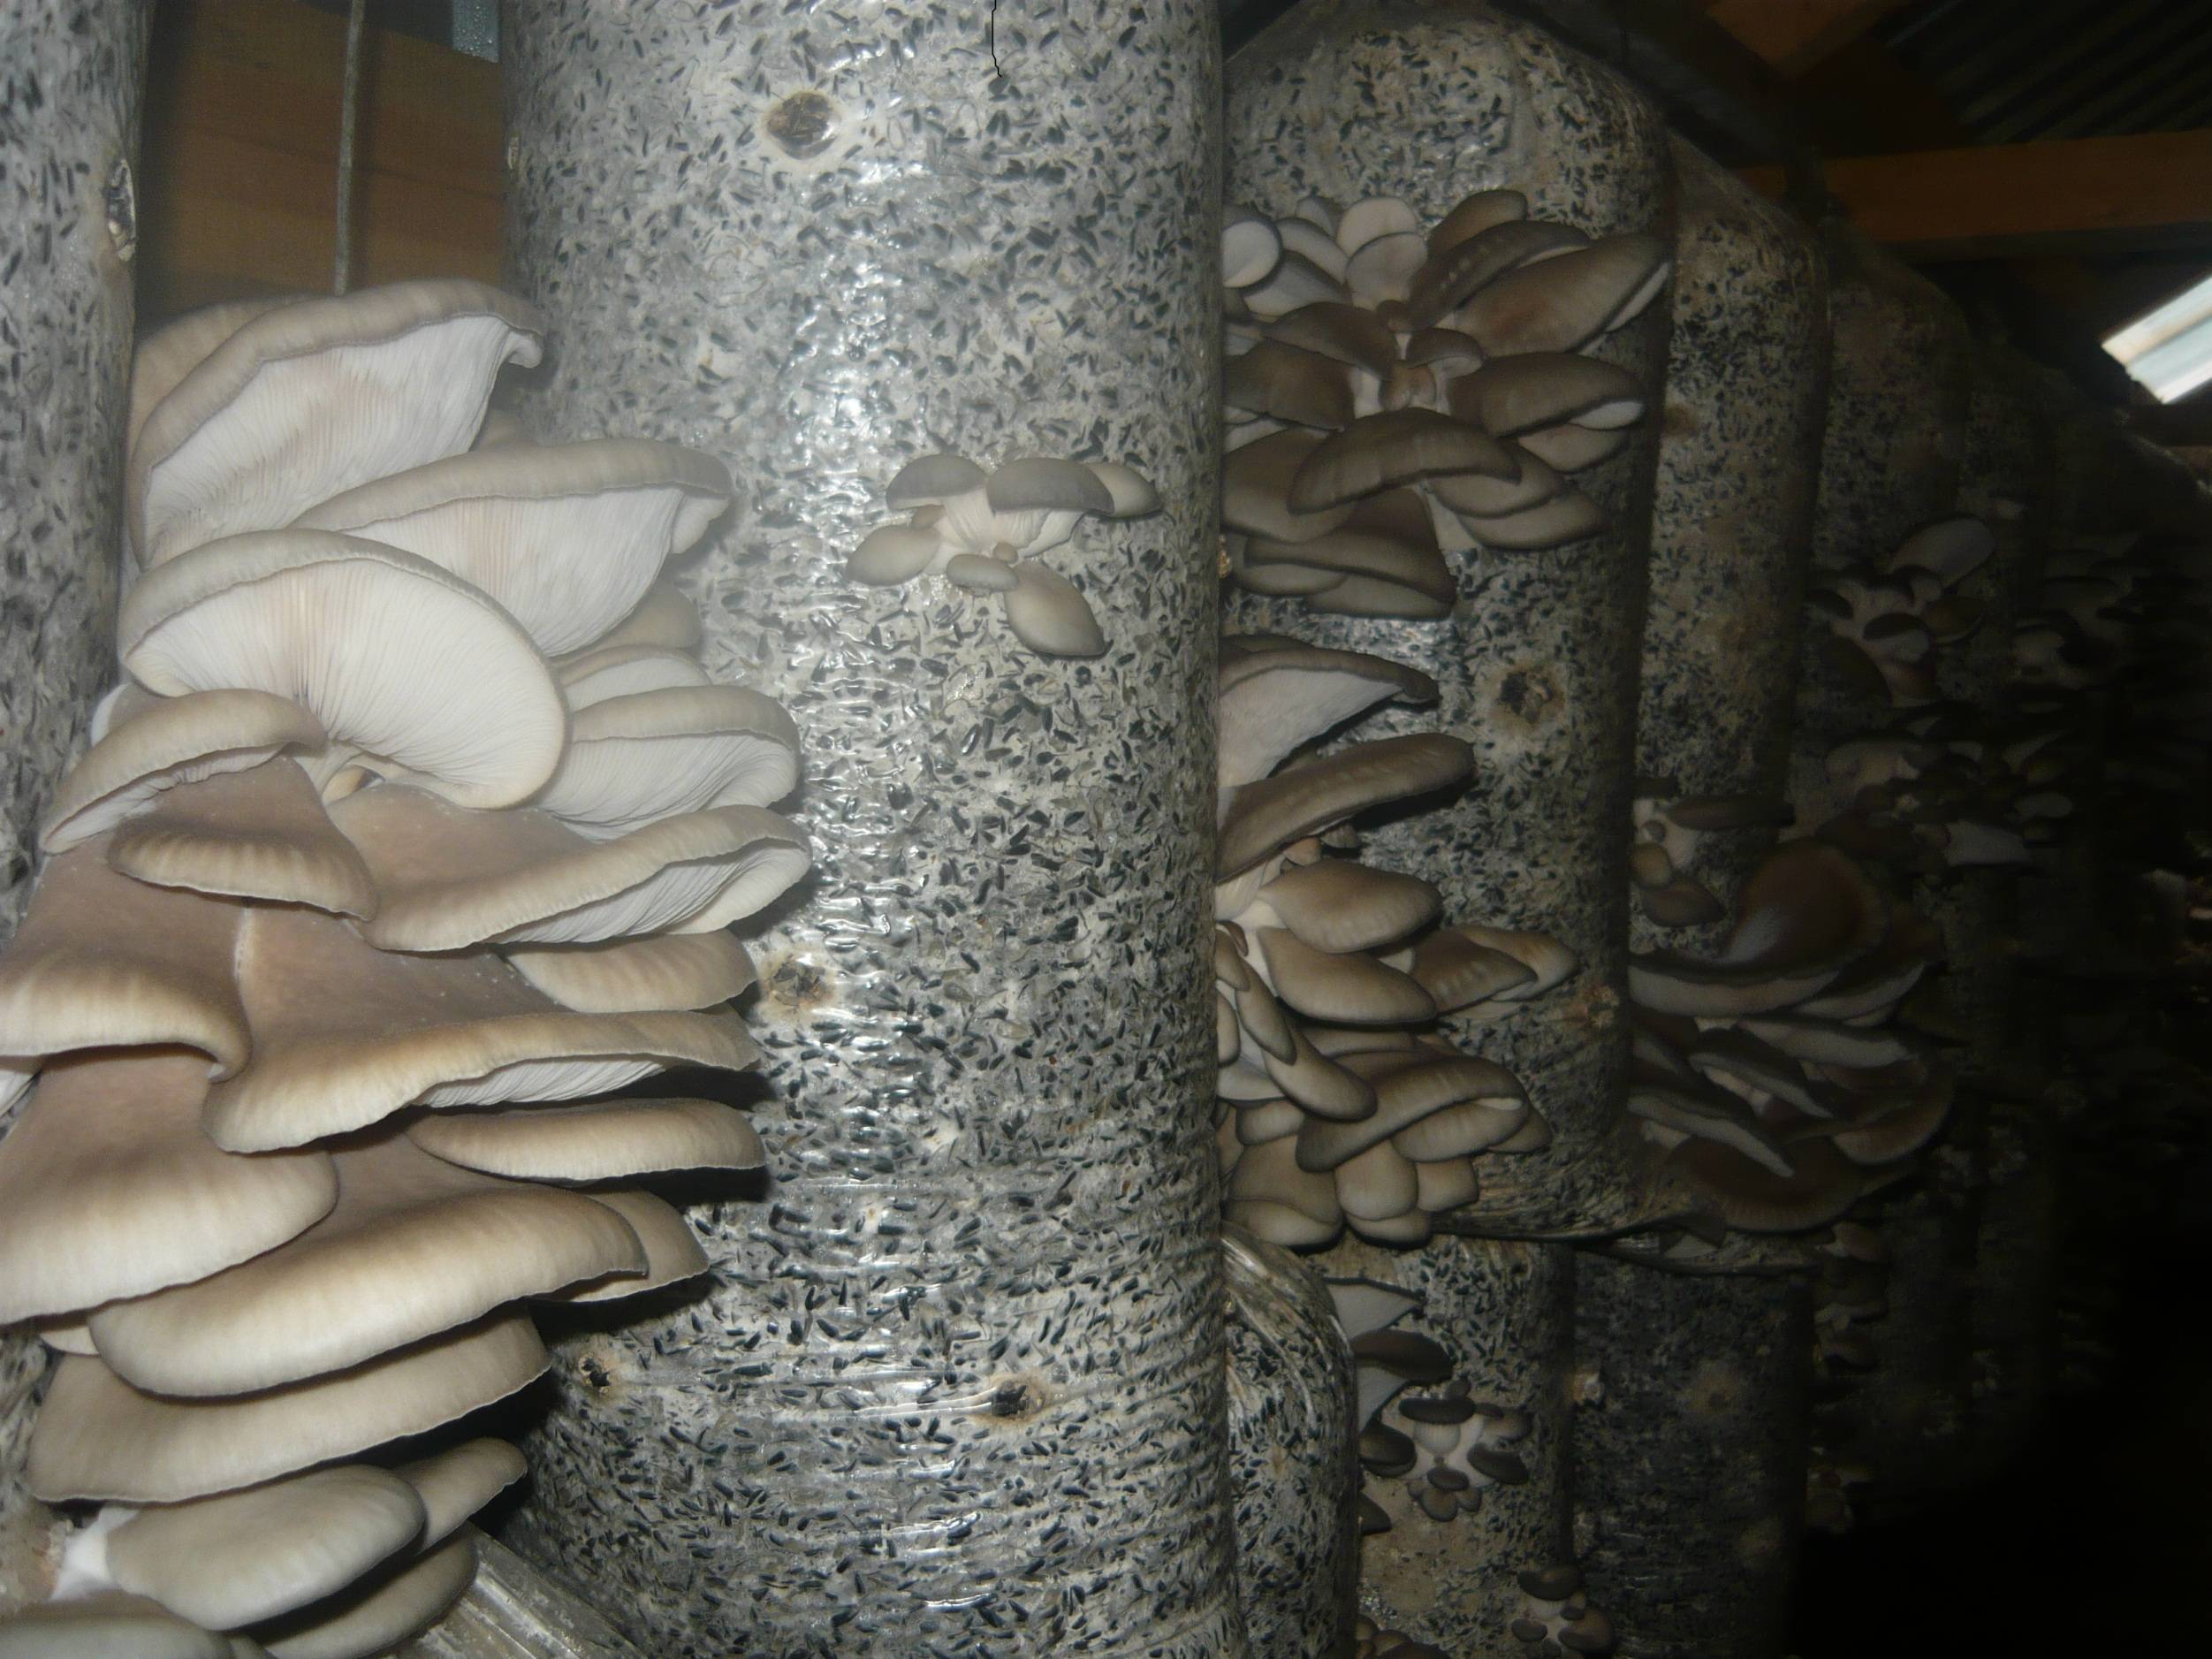 Выращивание грибов в домашних условиях — инструкция для новичков: описание на примере вешенок, шампиньонов, мицелия. тонкости данного бизнеса (фото & видео) +отзывы